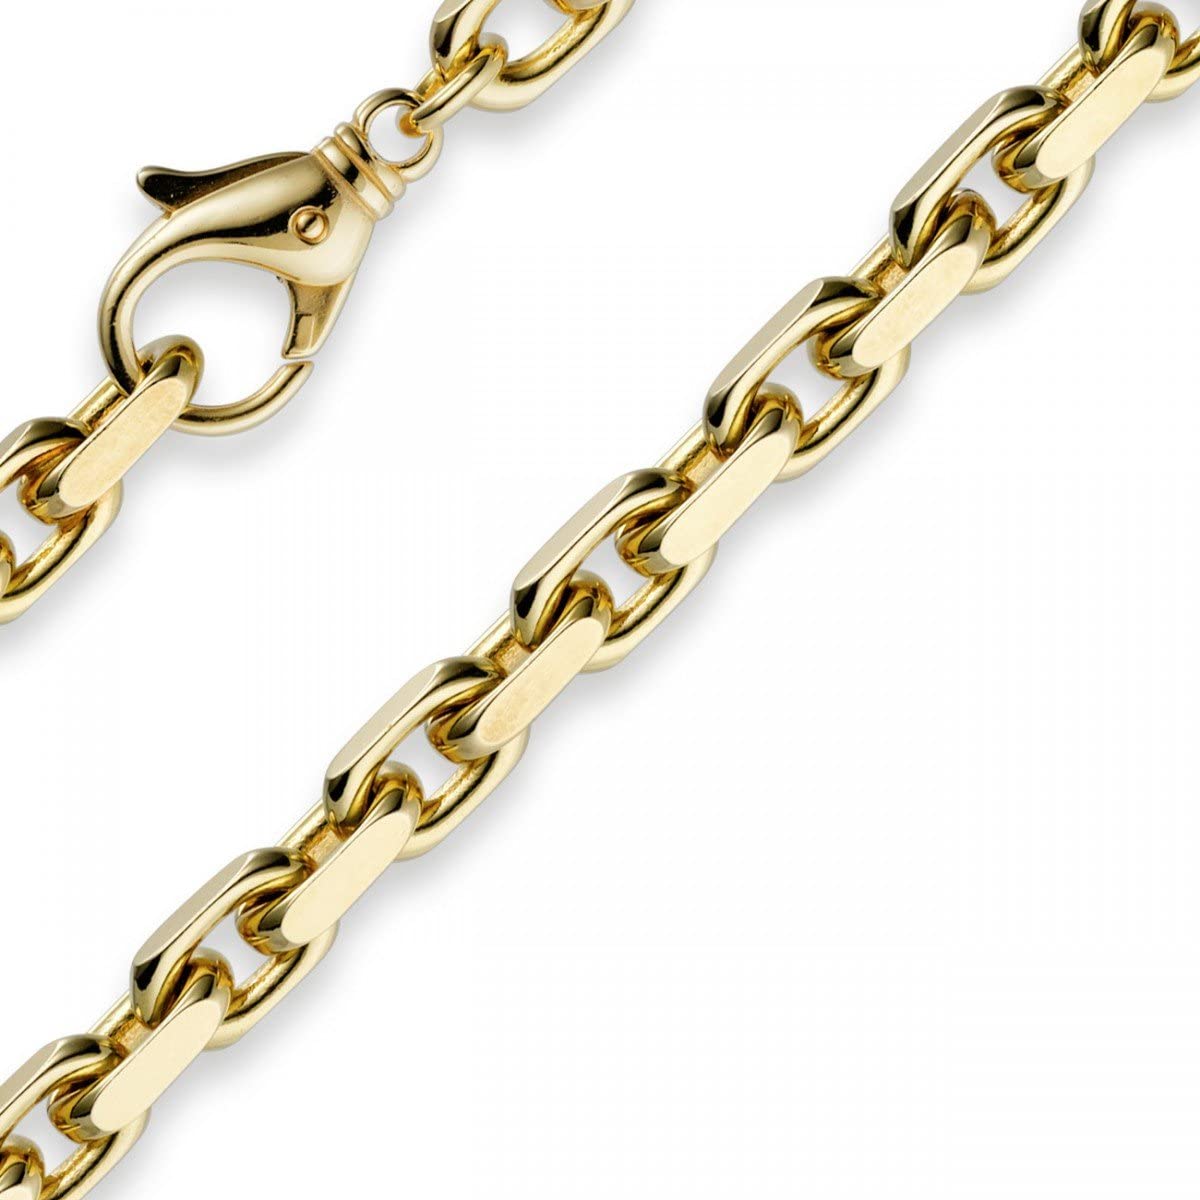 7 mm catena collana catena in oro giallo 585 70 cm per uomo oro catena